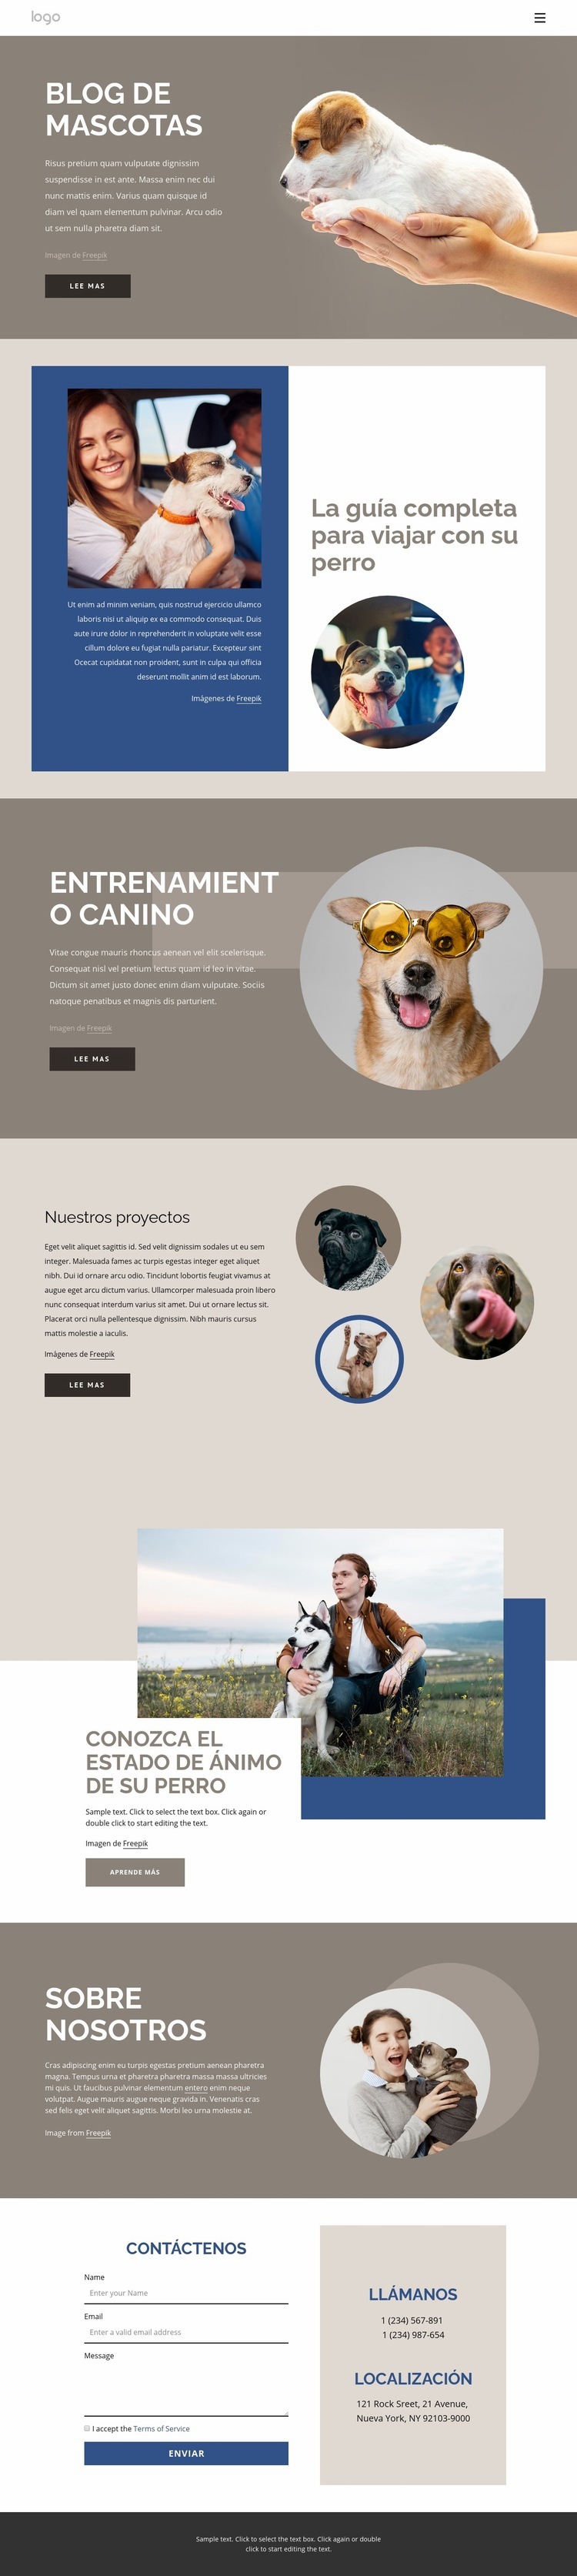 Blog de mascotas Maqueta de sitio web